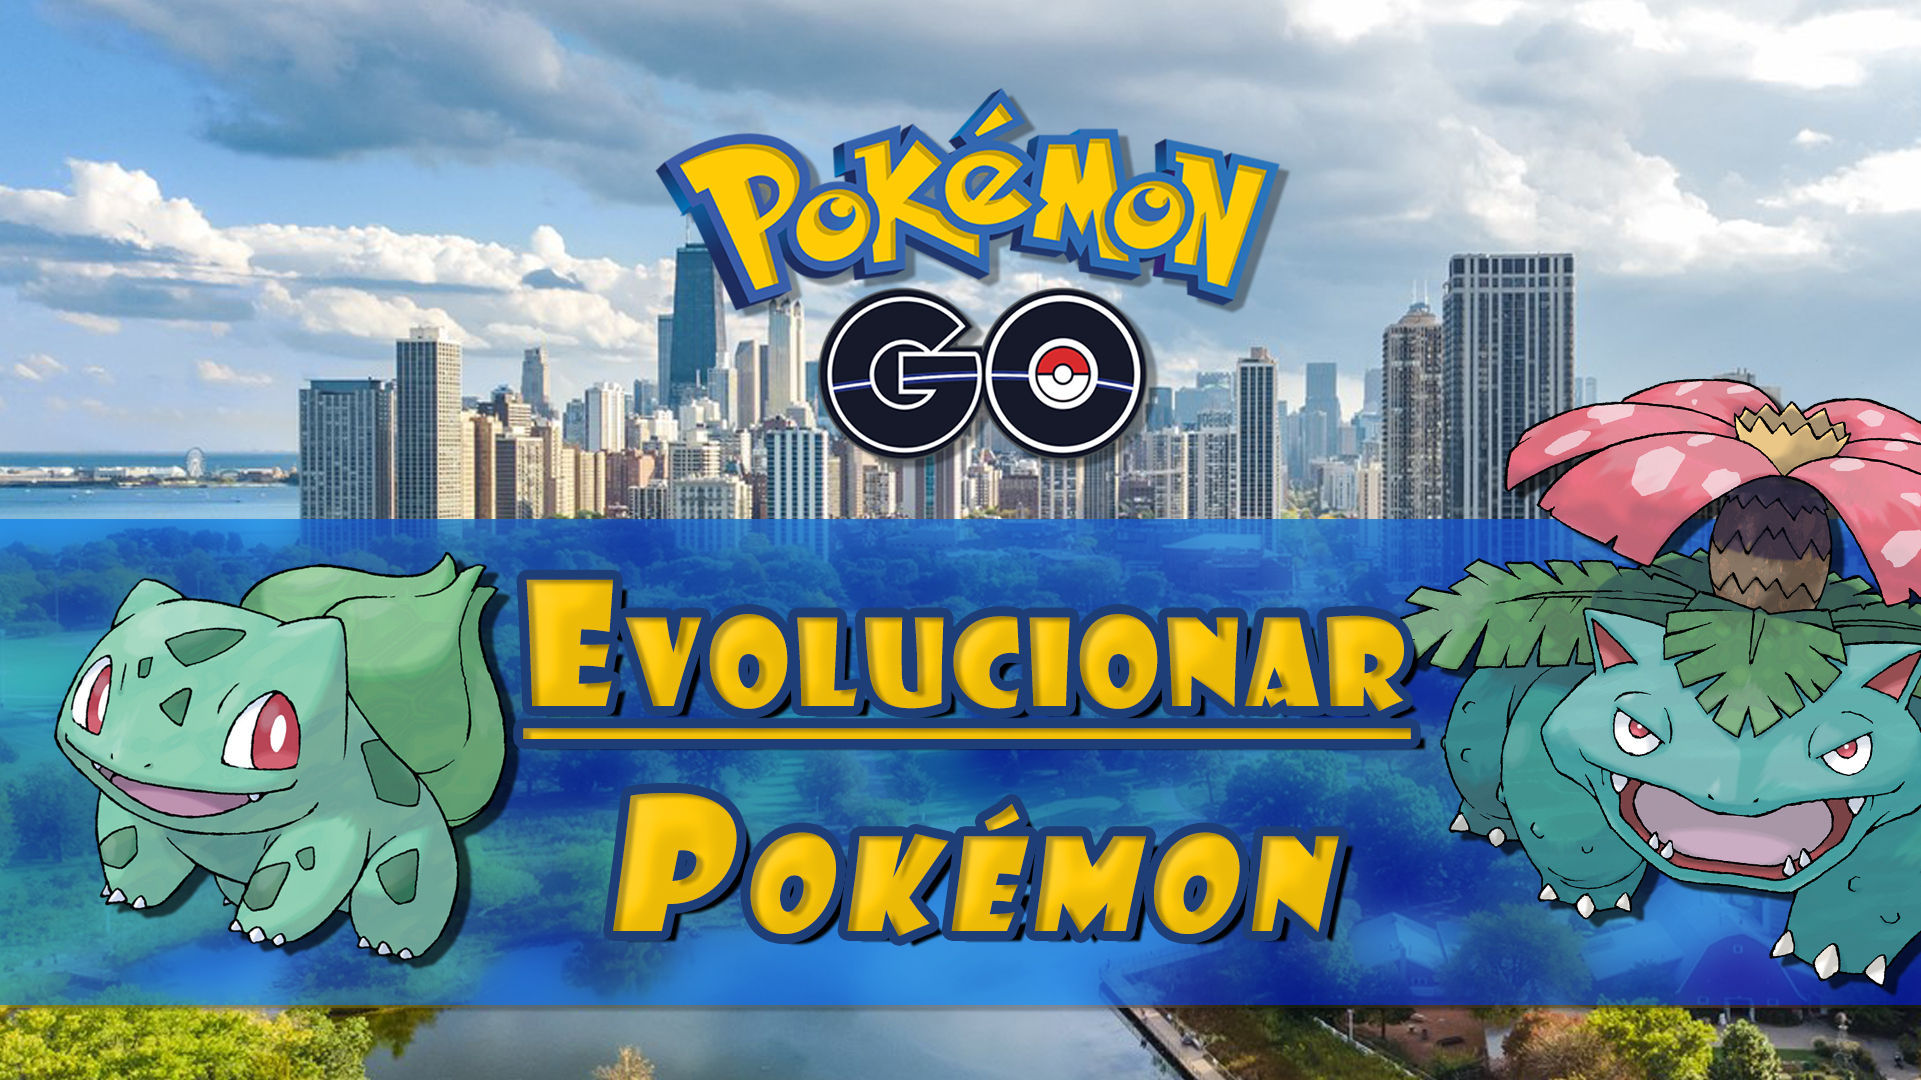 Conjugado Familiarizarse Estados Unidos Cómo evolucionar Pokémon en Pokémon Go? Características, tipos y costes